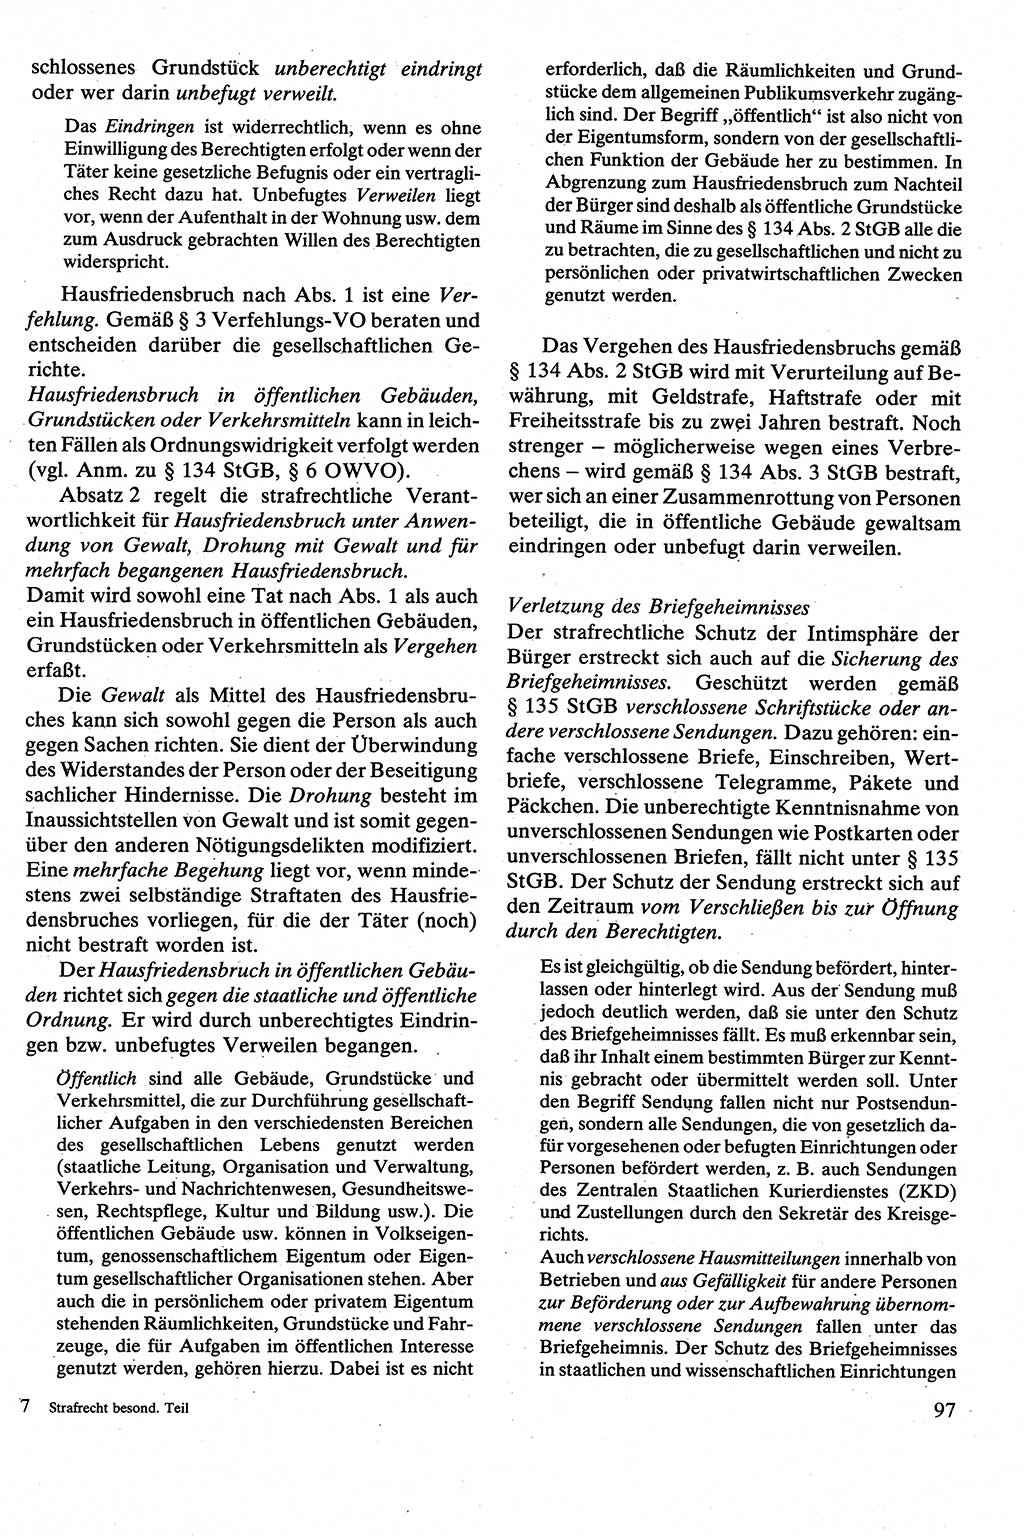 Strafrecht [Deutsche Demokratische Republik (DDR)], Besonderer Teil, Lehrbuch 1981, Seite 97 (Strafr. DDR BT Lb. 1981, S. 97)